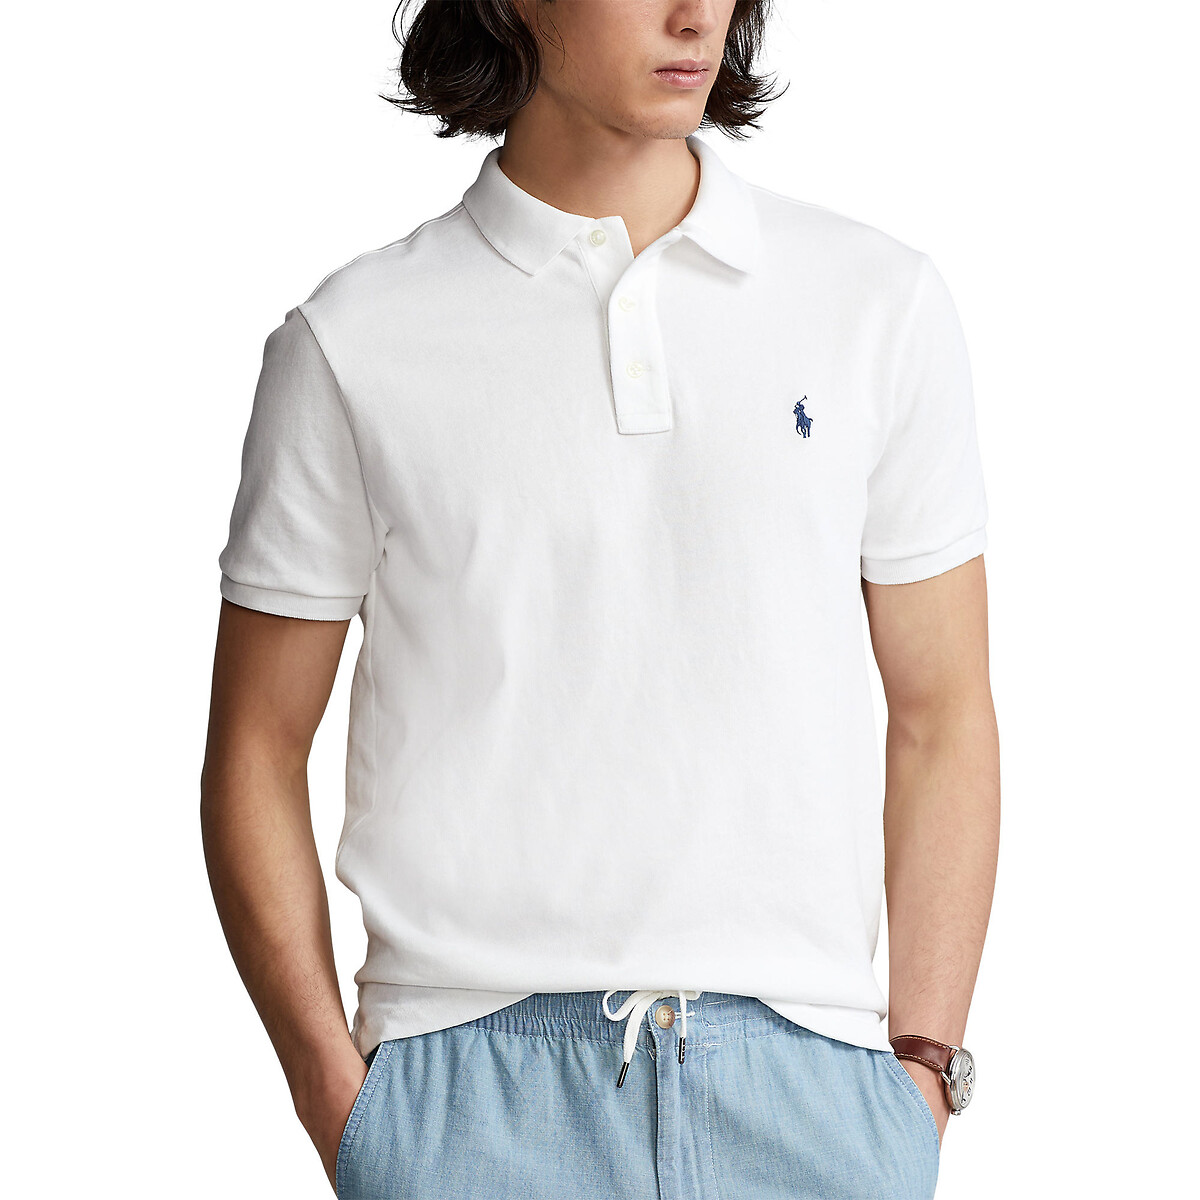 Рубашка-поло прямого покроя из махровой ткани Spa Terry  XL белый LaRedoute, размер XL